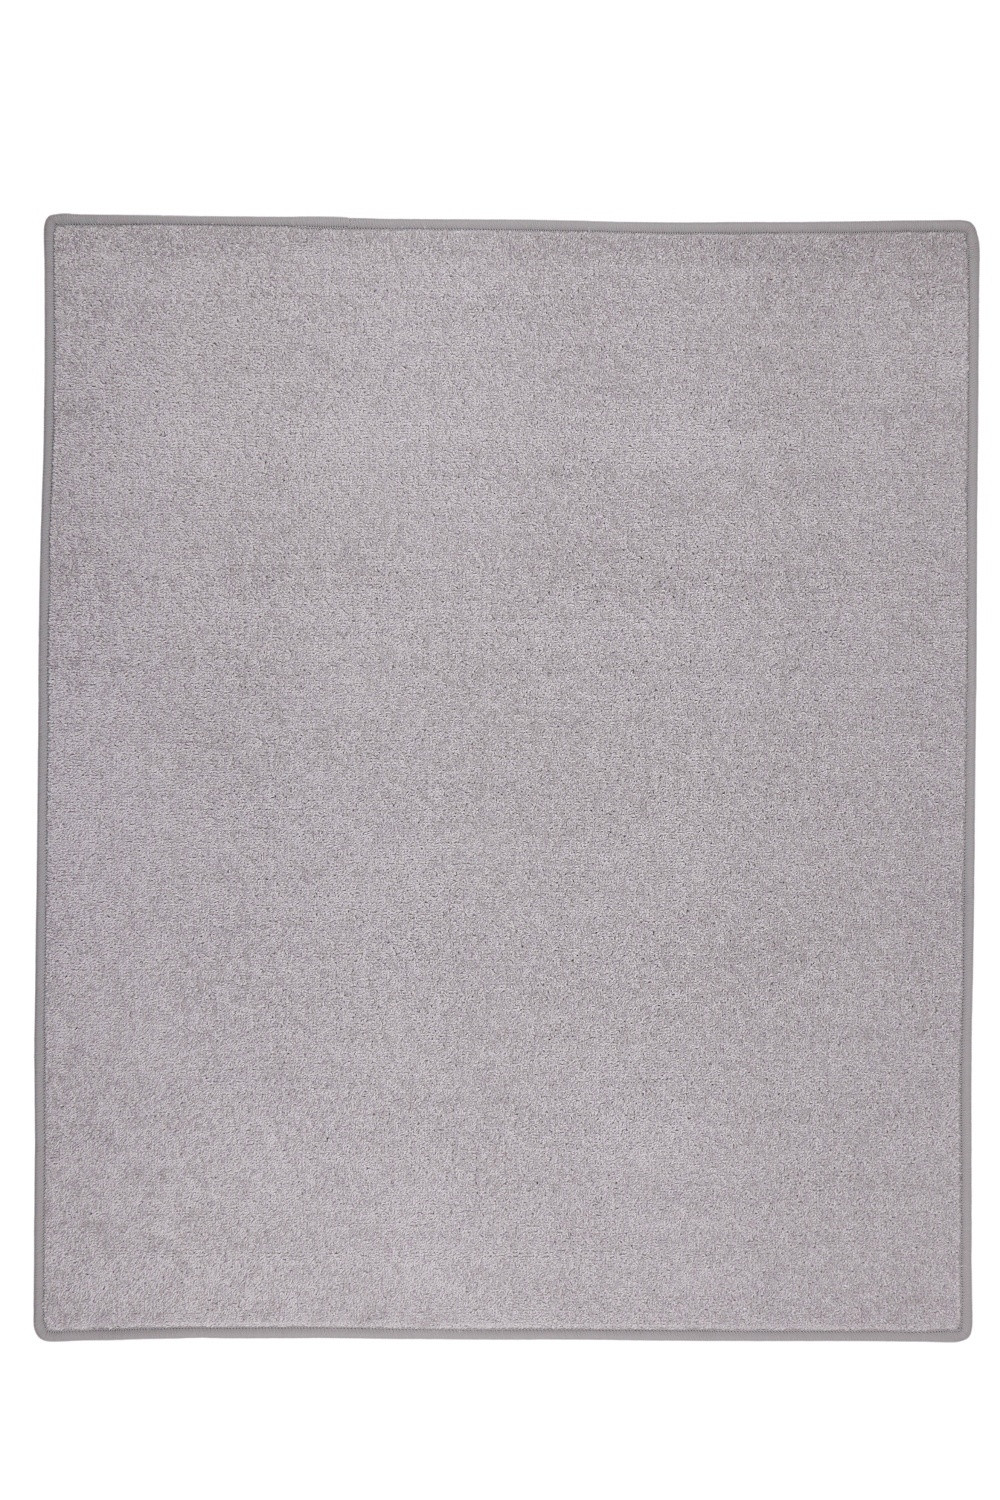 Kusový koberec Eton sivý 73 - 300x400 cm Vopi koberce 